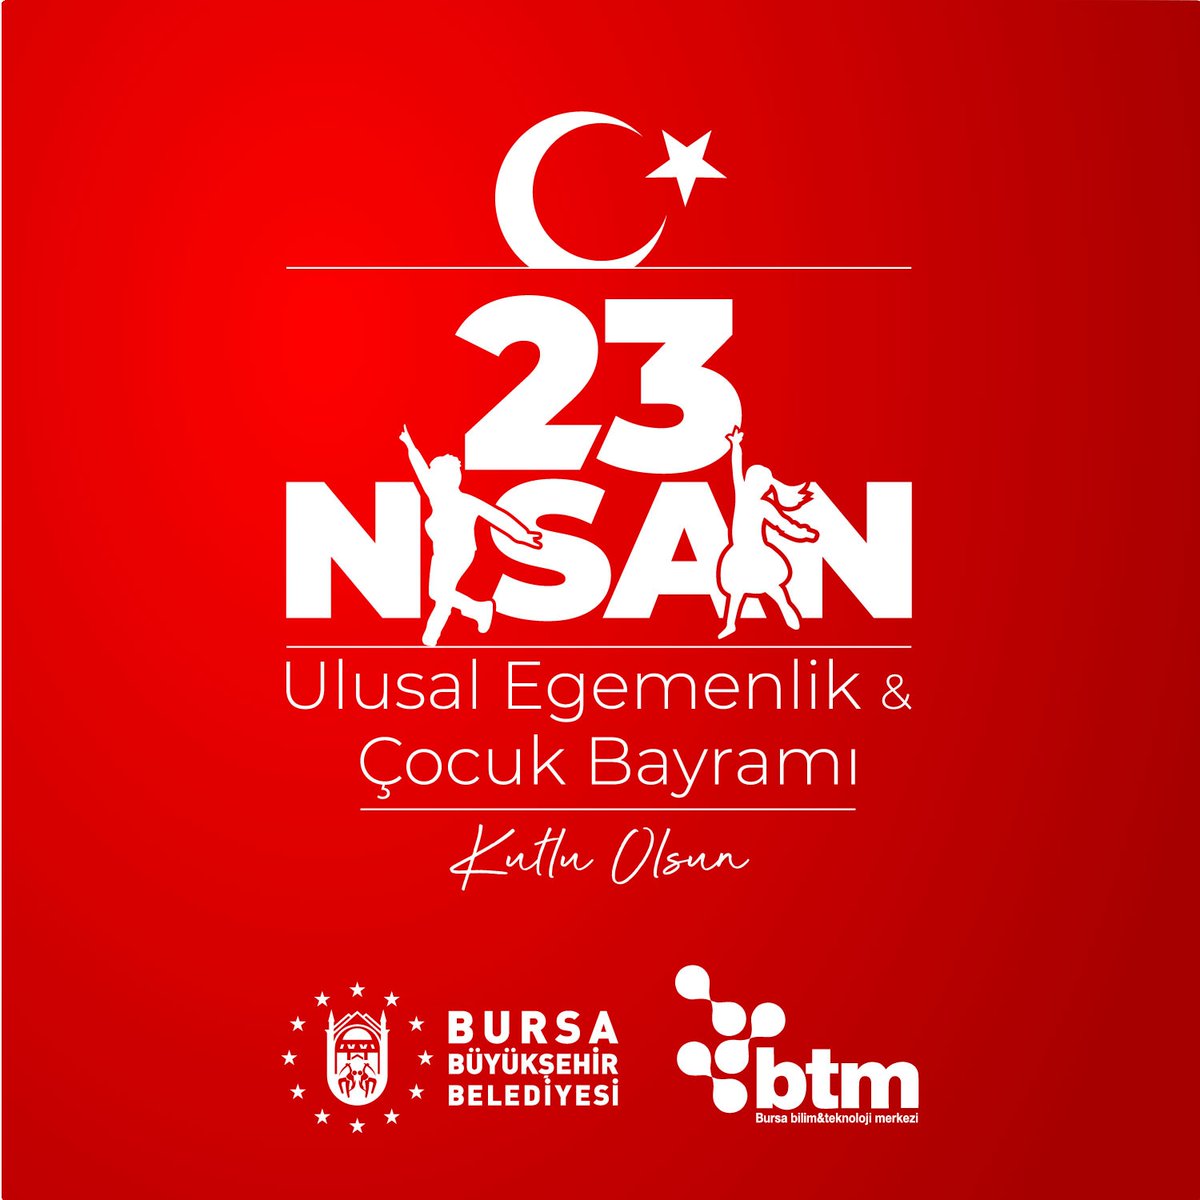 🇹🇷 Ulu Önderimiz Gazi Mustafa Kemal Atatürk'ün çocuklara armağan ettiği #23Nisan Ulusal Egemenlik ve Çocuk Bayramımız kutlu olsun! #23nisan